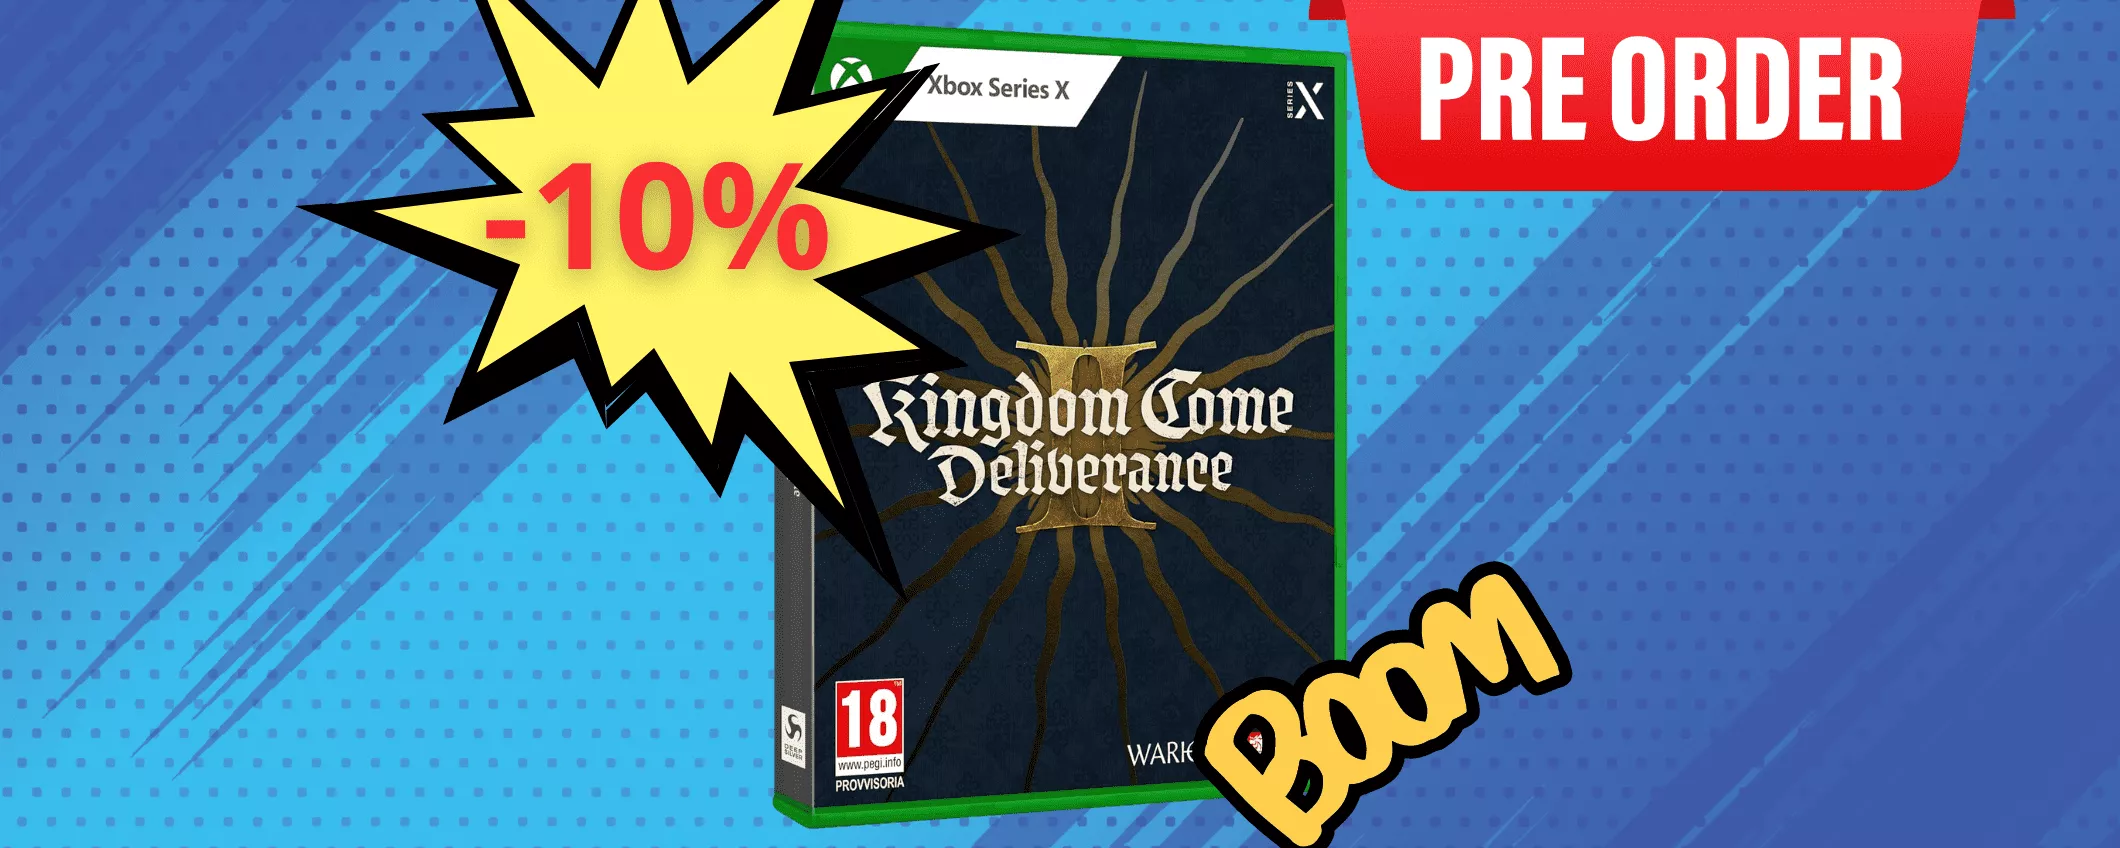 Kingdom Come: Deliverance II per Xbox è in preordine su Amazon con lo SCONTO DEL 10%